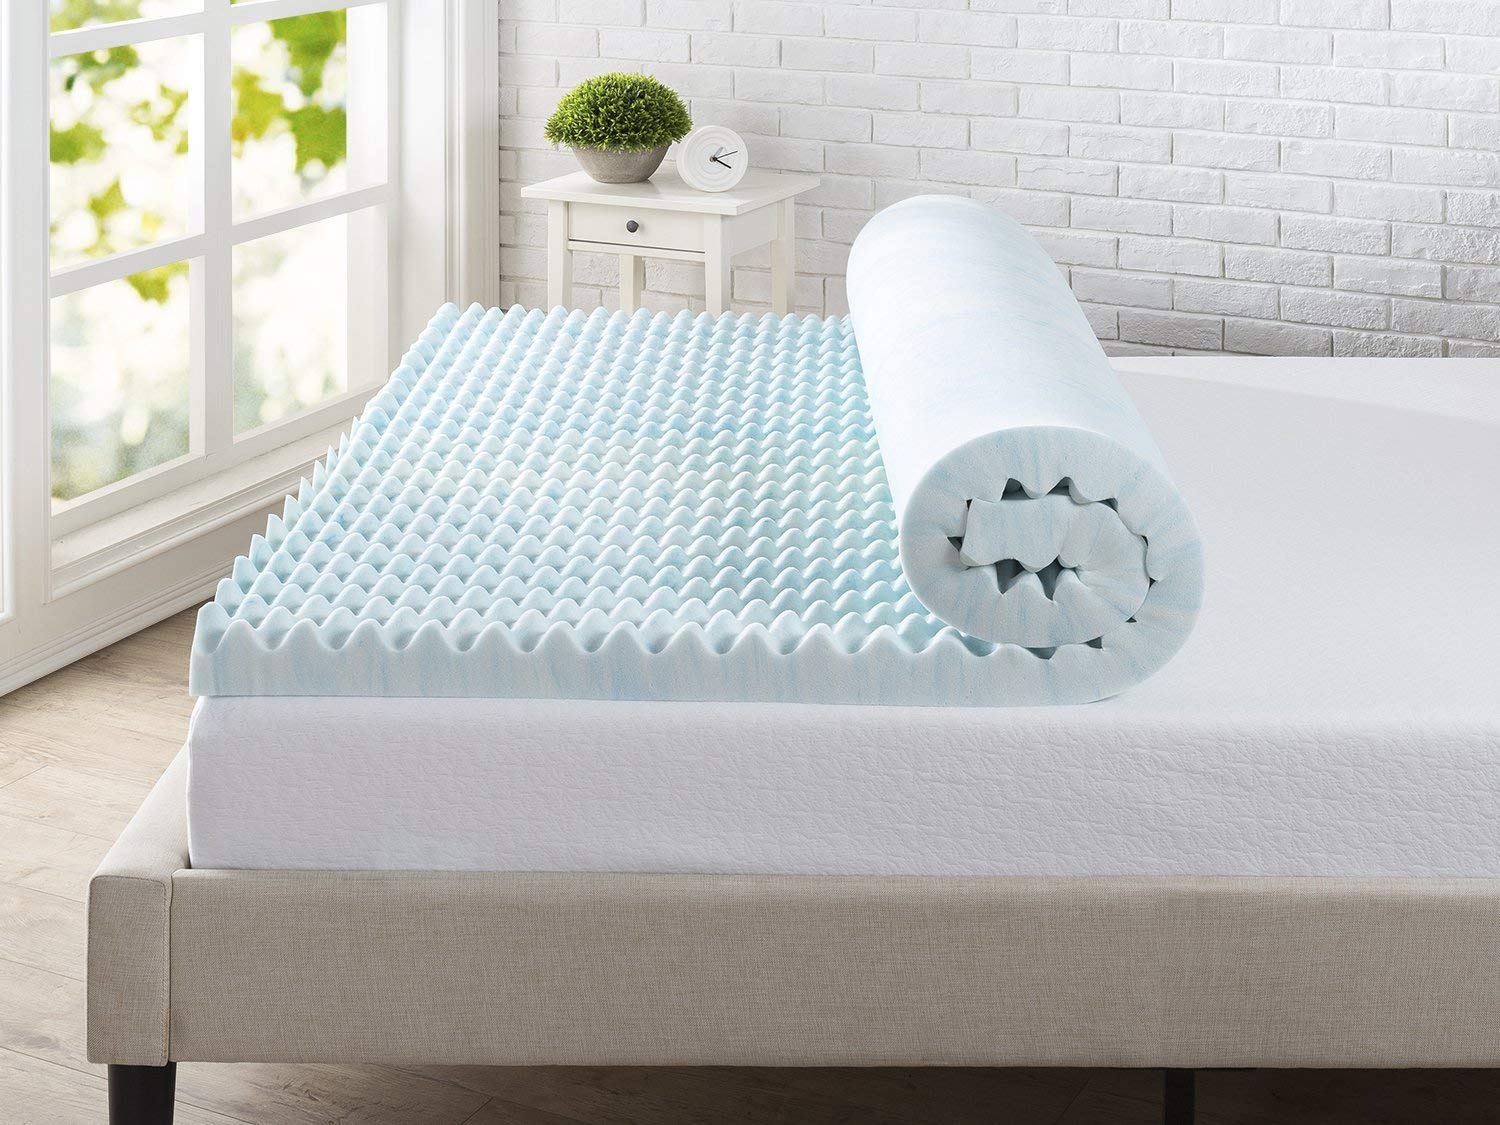 mattress topper for firmer bed